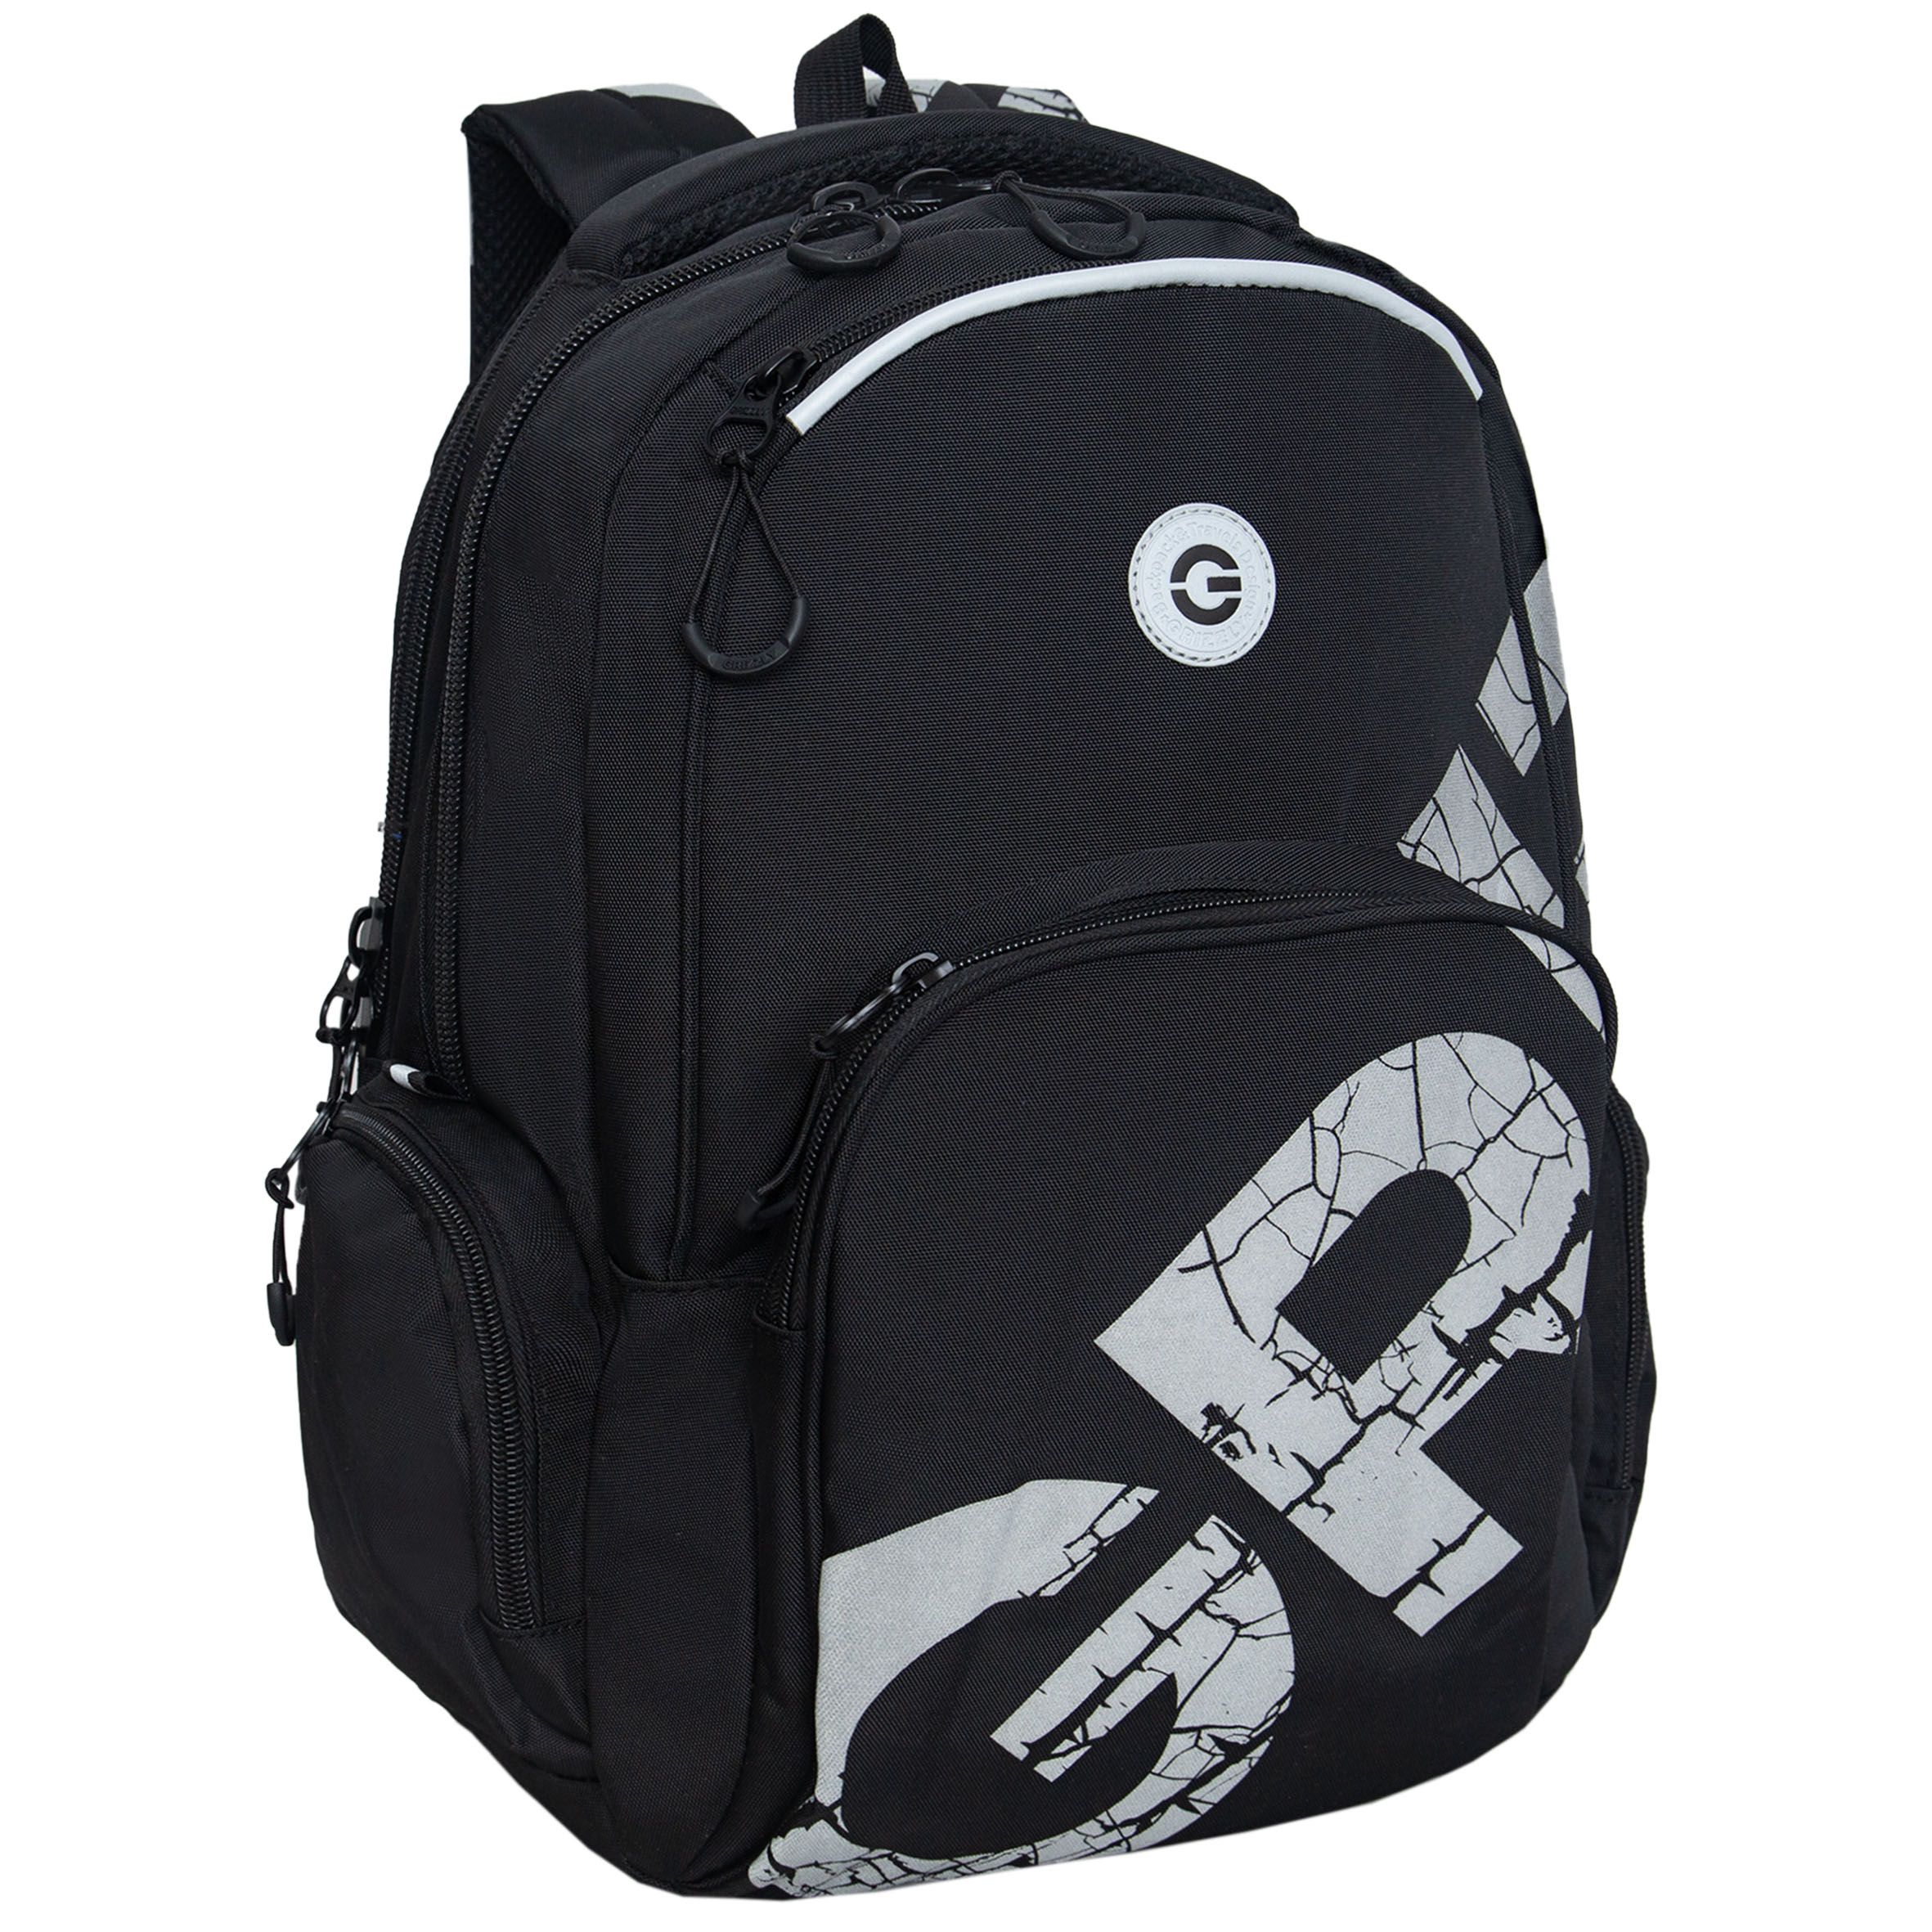 Рюкзак GRIZZLY RU-433-1 молодежный модный для подростков черный рюкзак молодежный 45 х 32 х 23 см эргономичная спинка отделение для ноутбука grizzly 330 чёрный ru 330 2 1